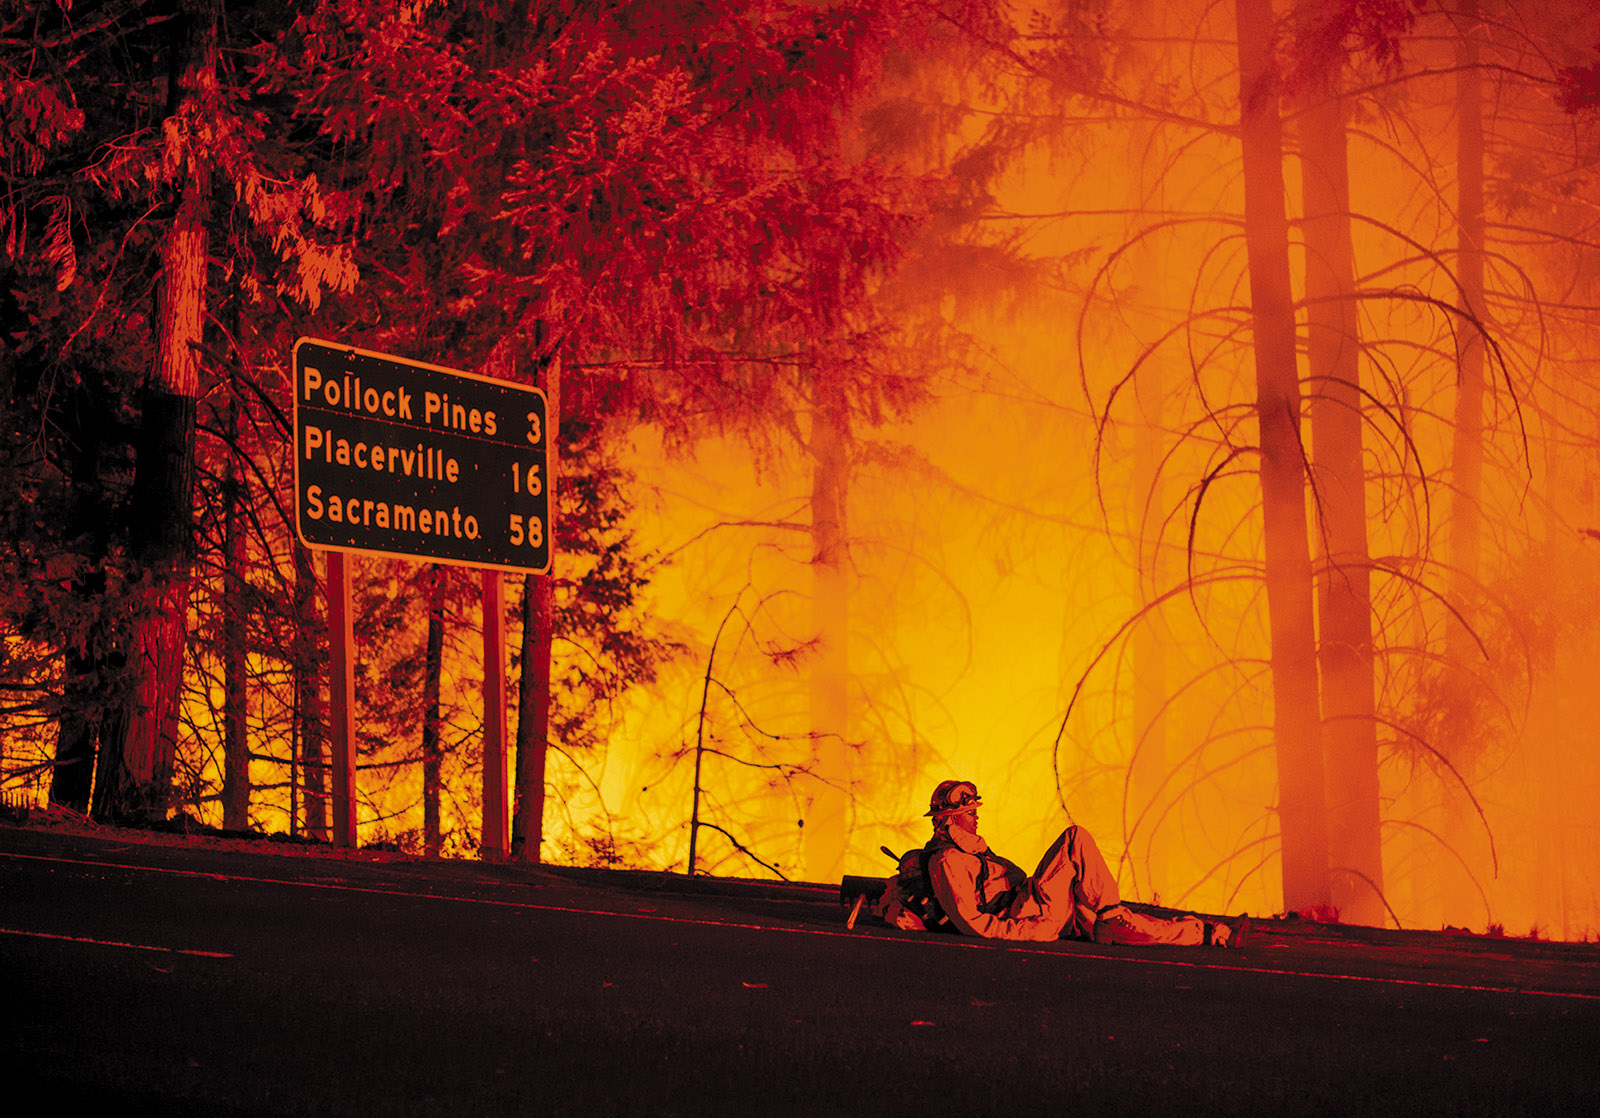 A firefighter taking a break from battling the King Fire, Fresh Pond, California, September 2014